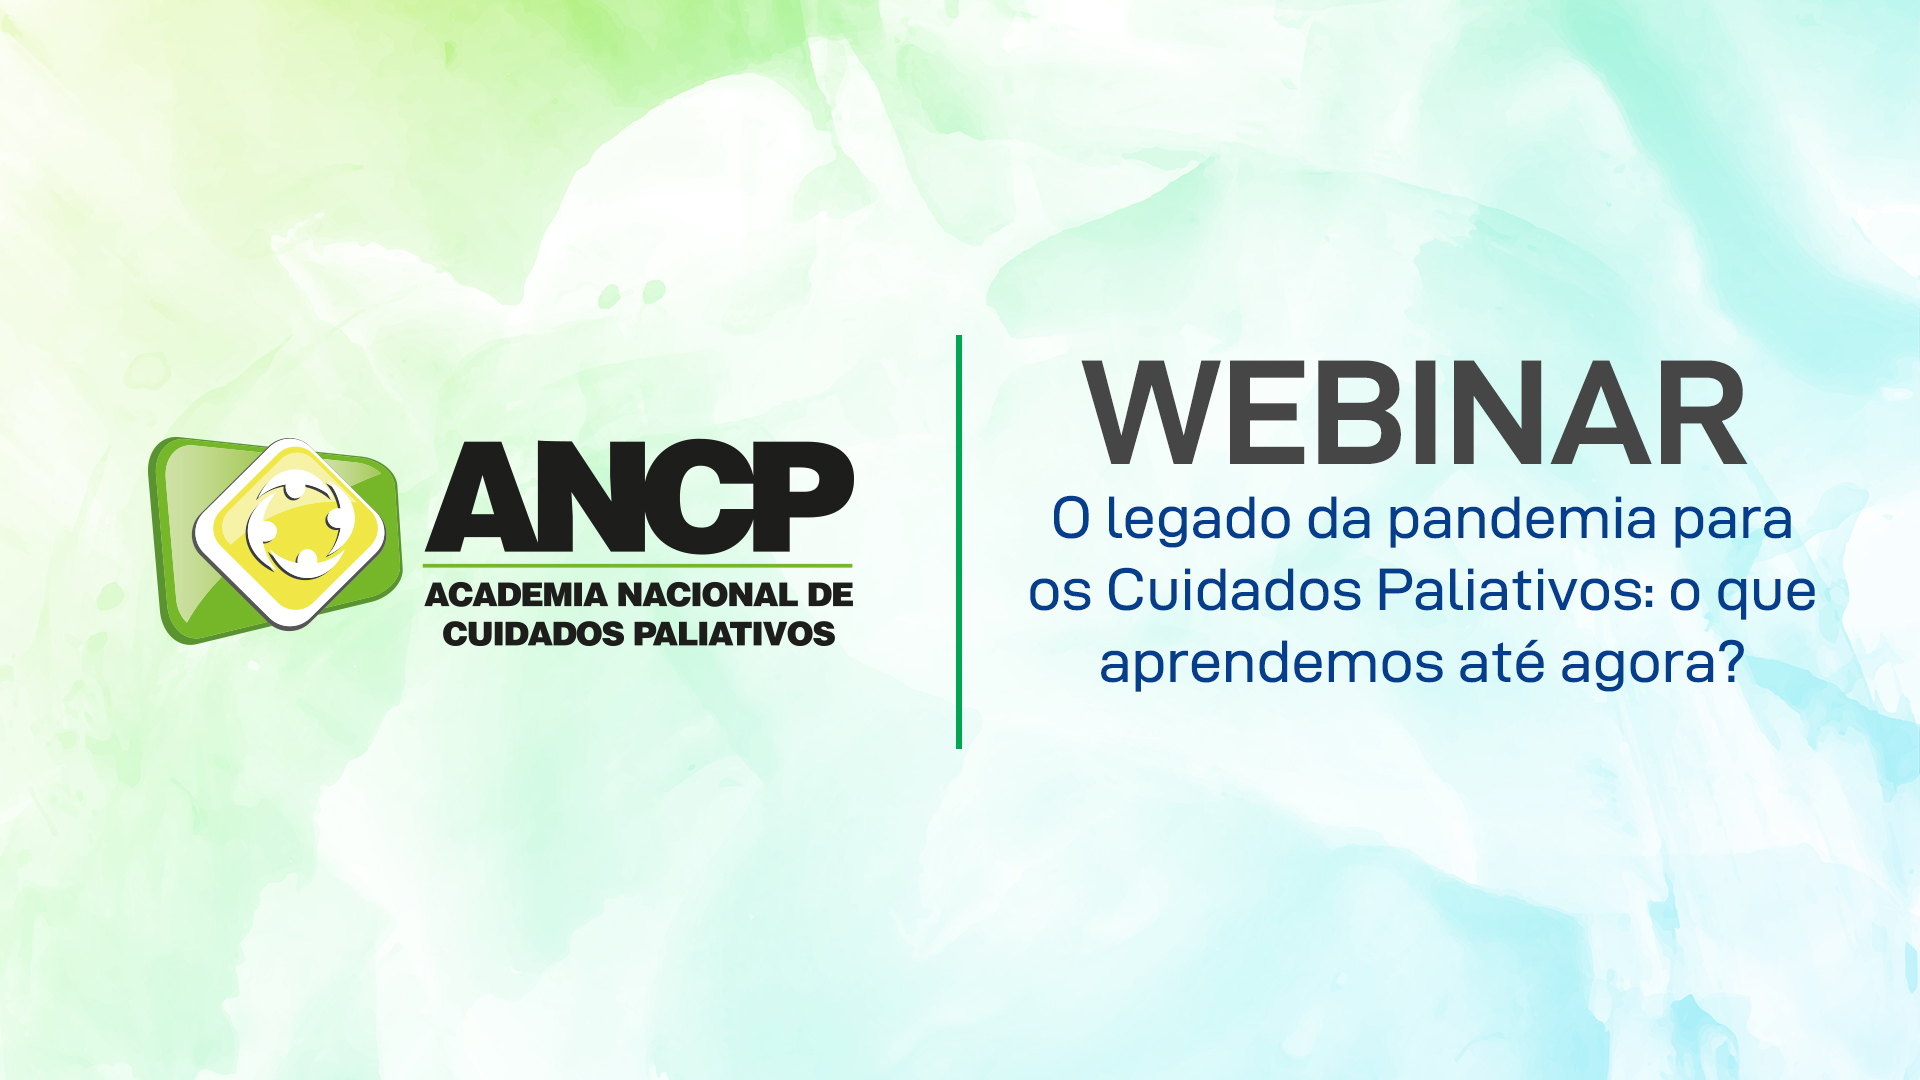 ANCP realizou webinar “O legado da pandemia para  os Cuidados Paliativos: o que aprendemos até agora?”